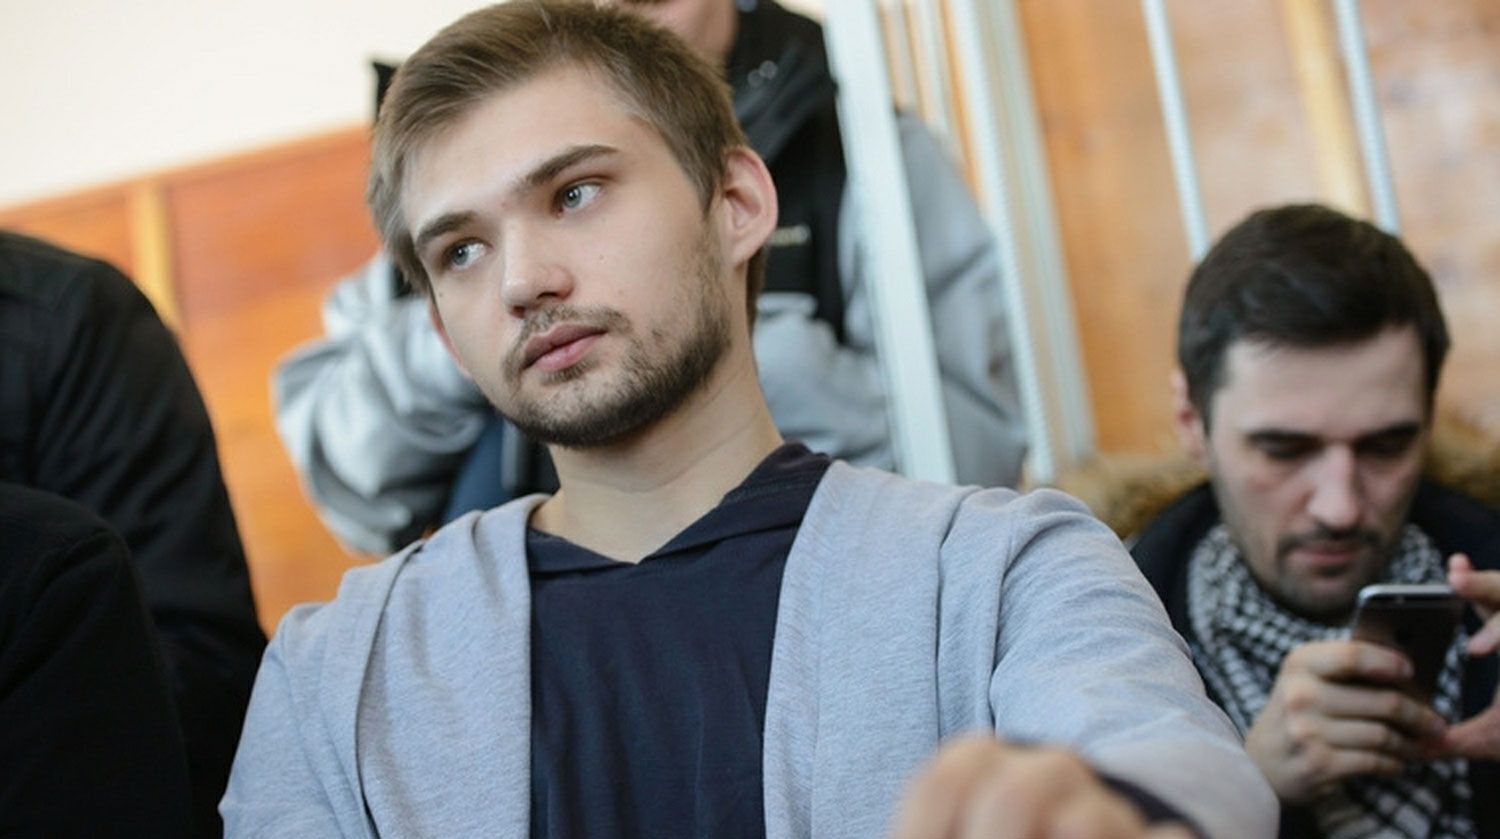 Dailystorm - Блогера Соколовского ограничили в снятии наличных на три года